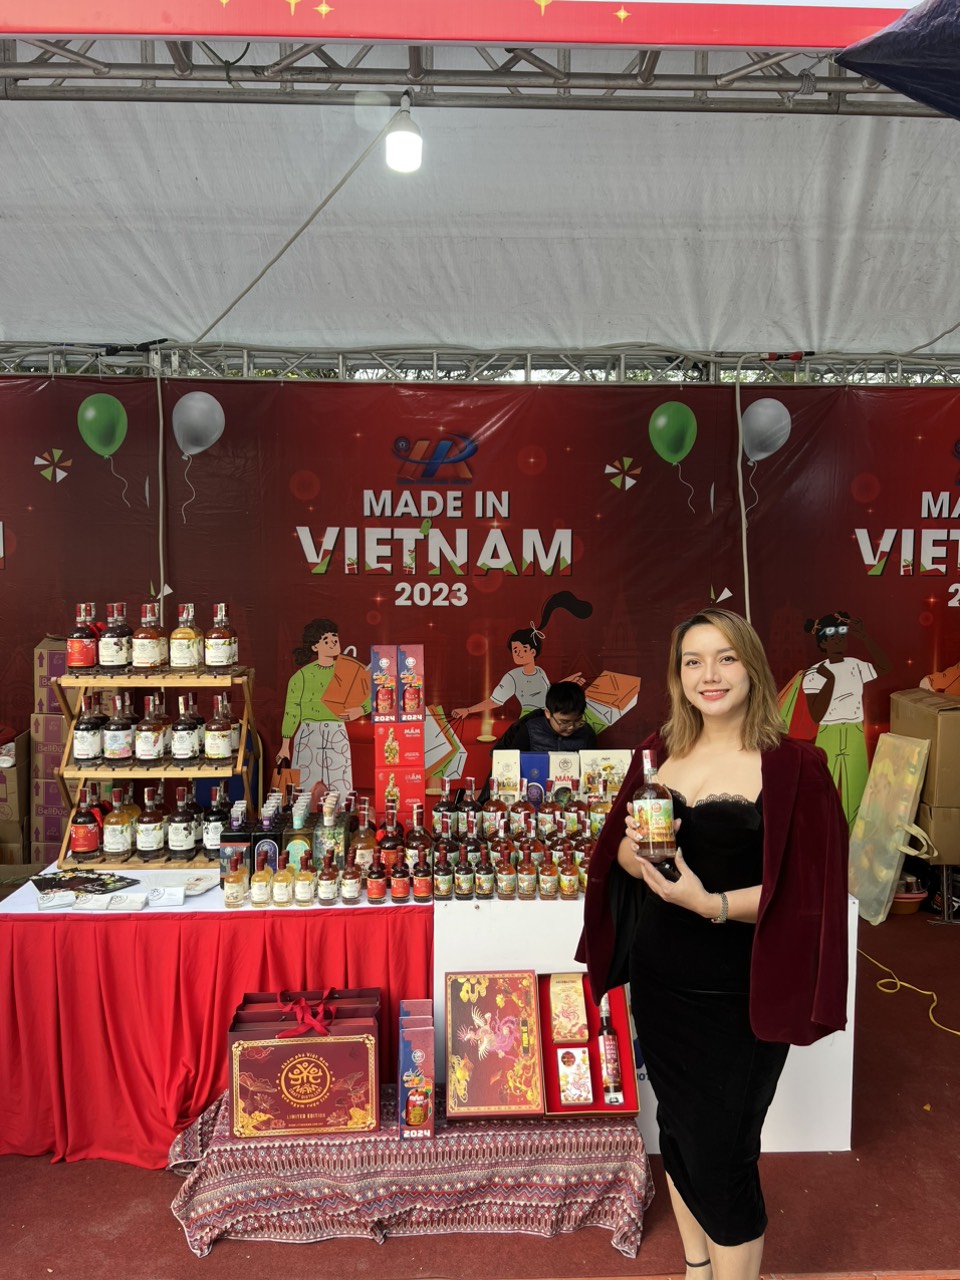 Hội chợ Made in Vietnam 2023 tại quận Hoàng Mai.